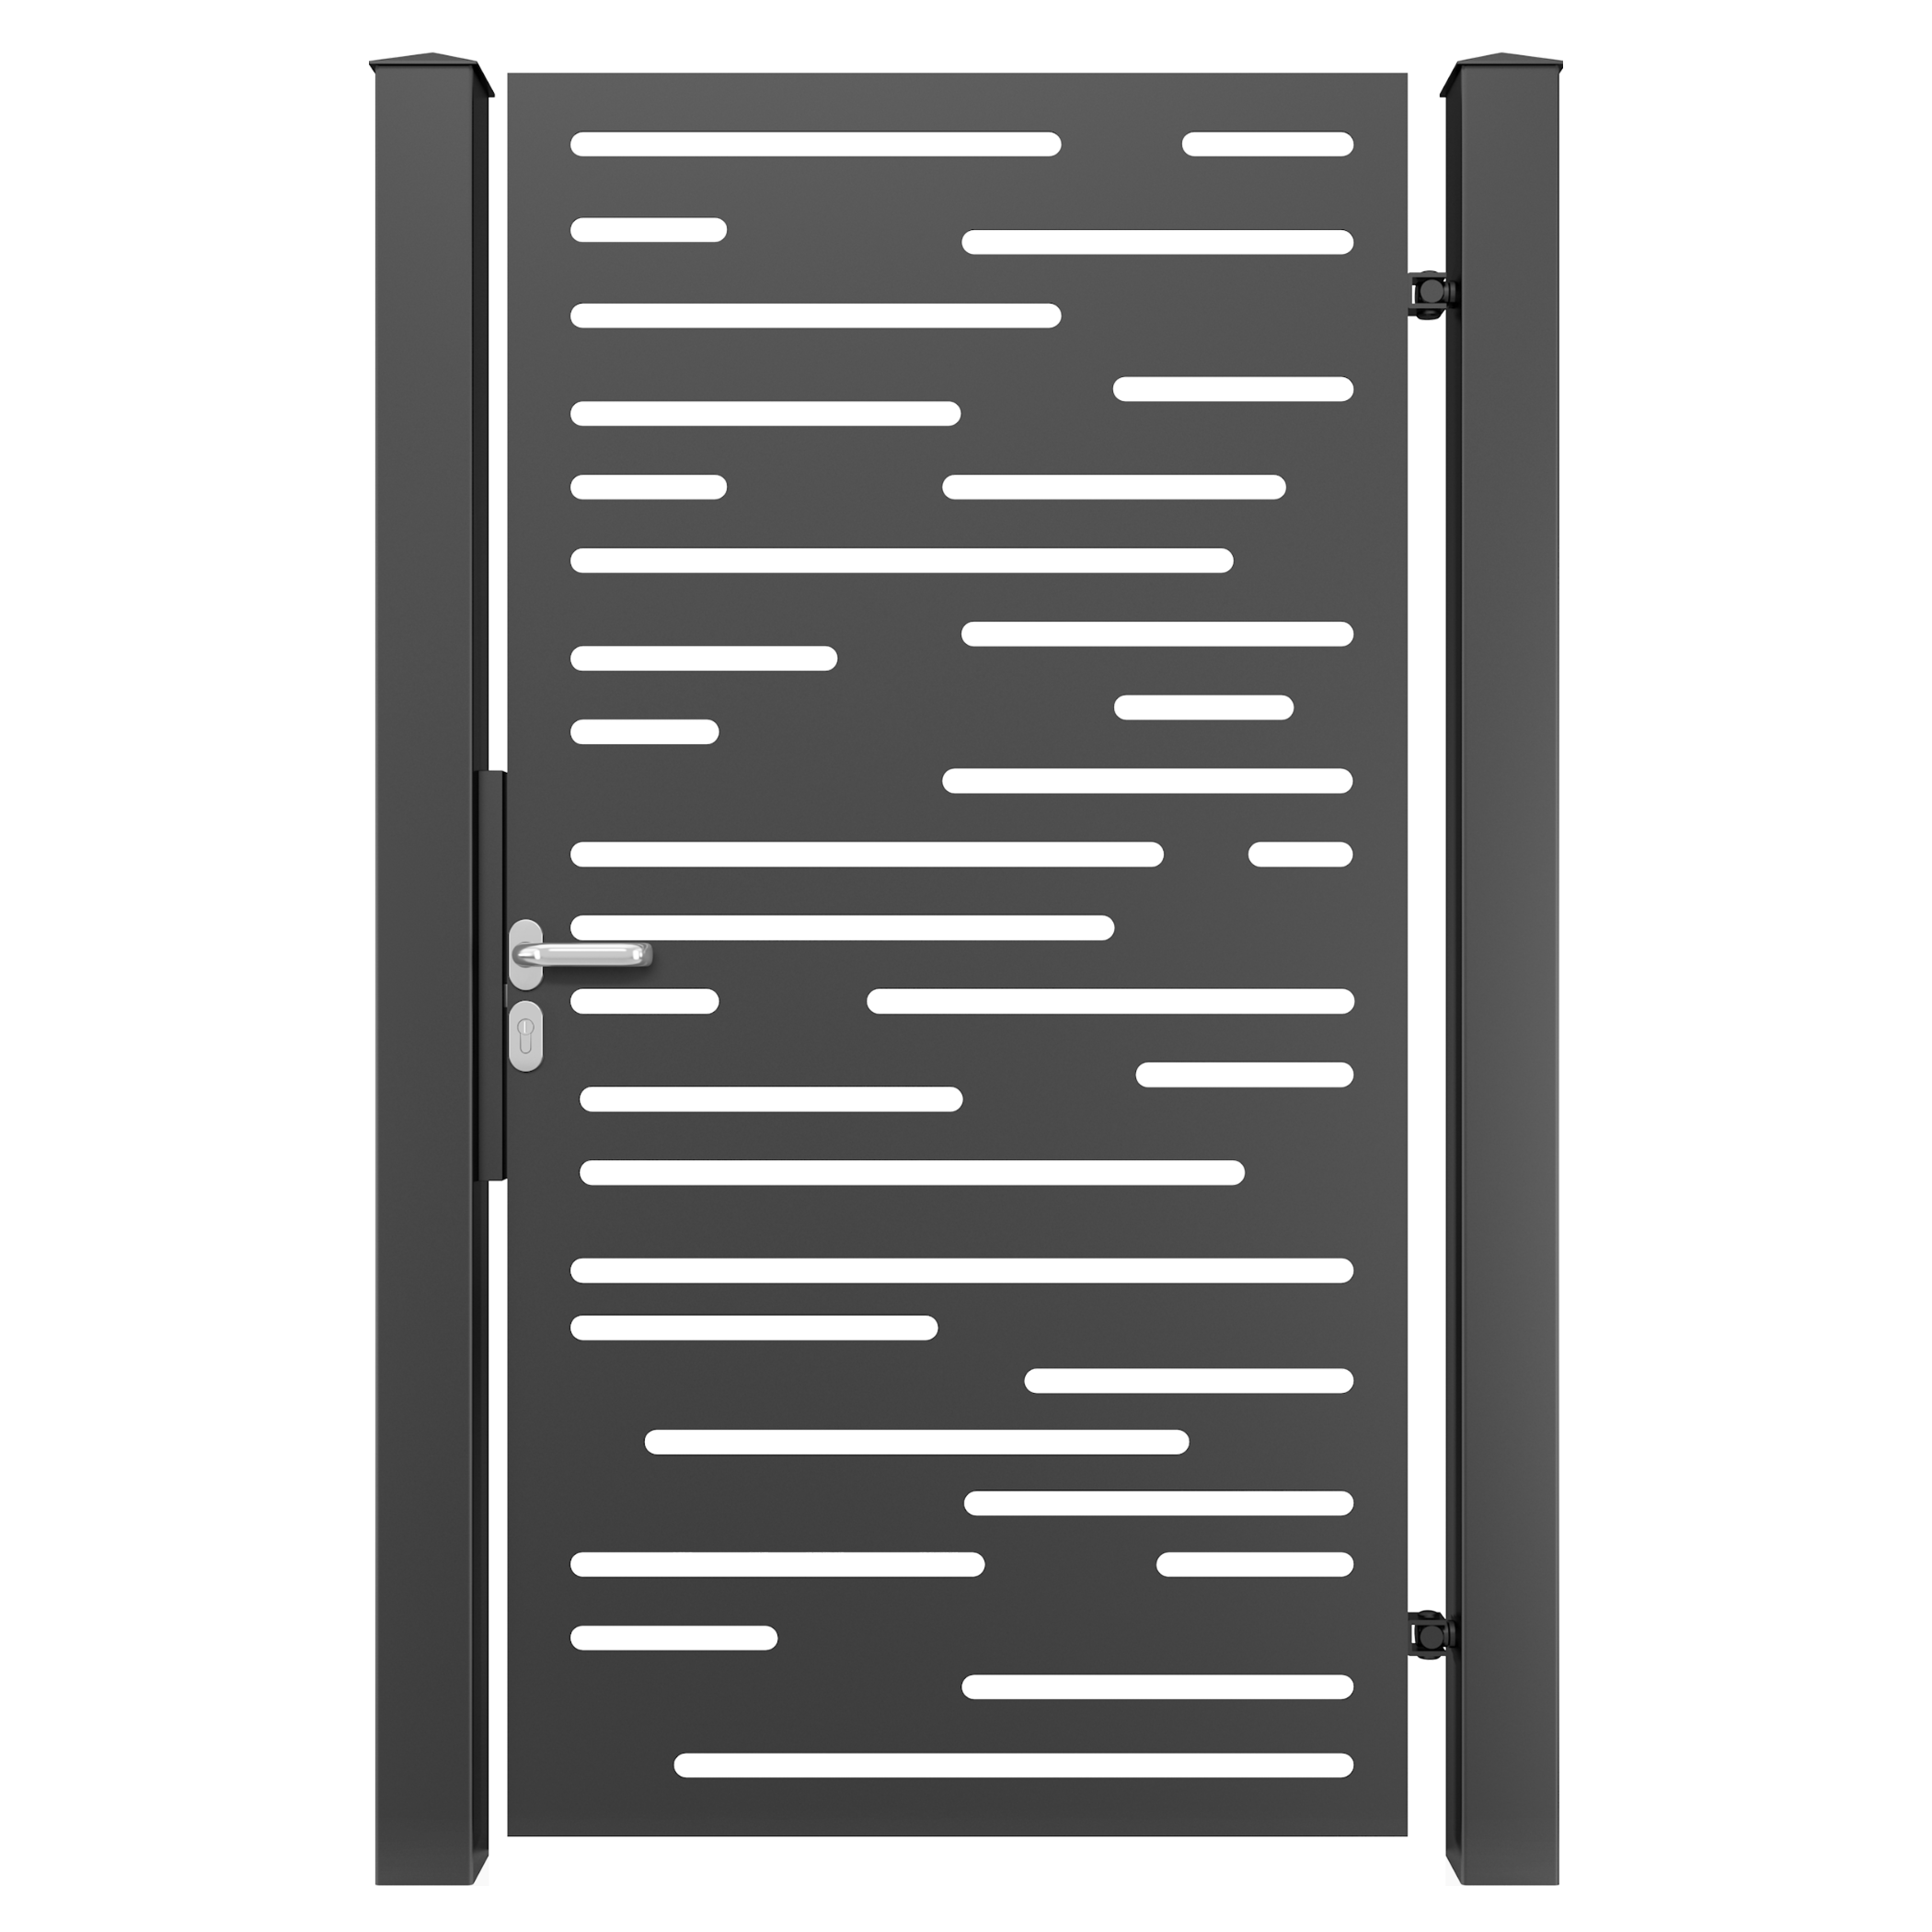 Poarta metalica pietonala aluminiu, din tabla decupata, PP31-R, dreapta, negru (RAL 9005), 910 x 1800 mm